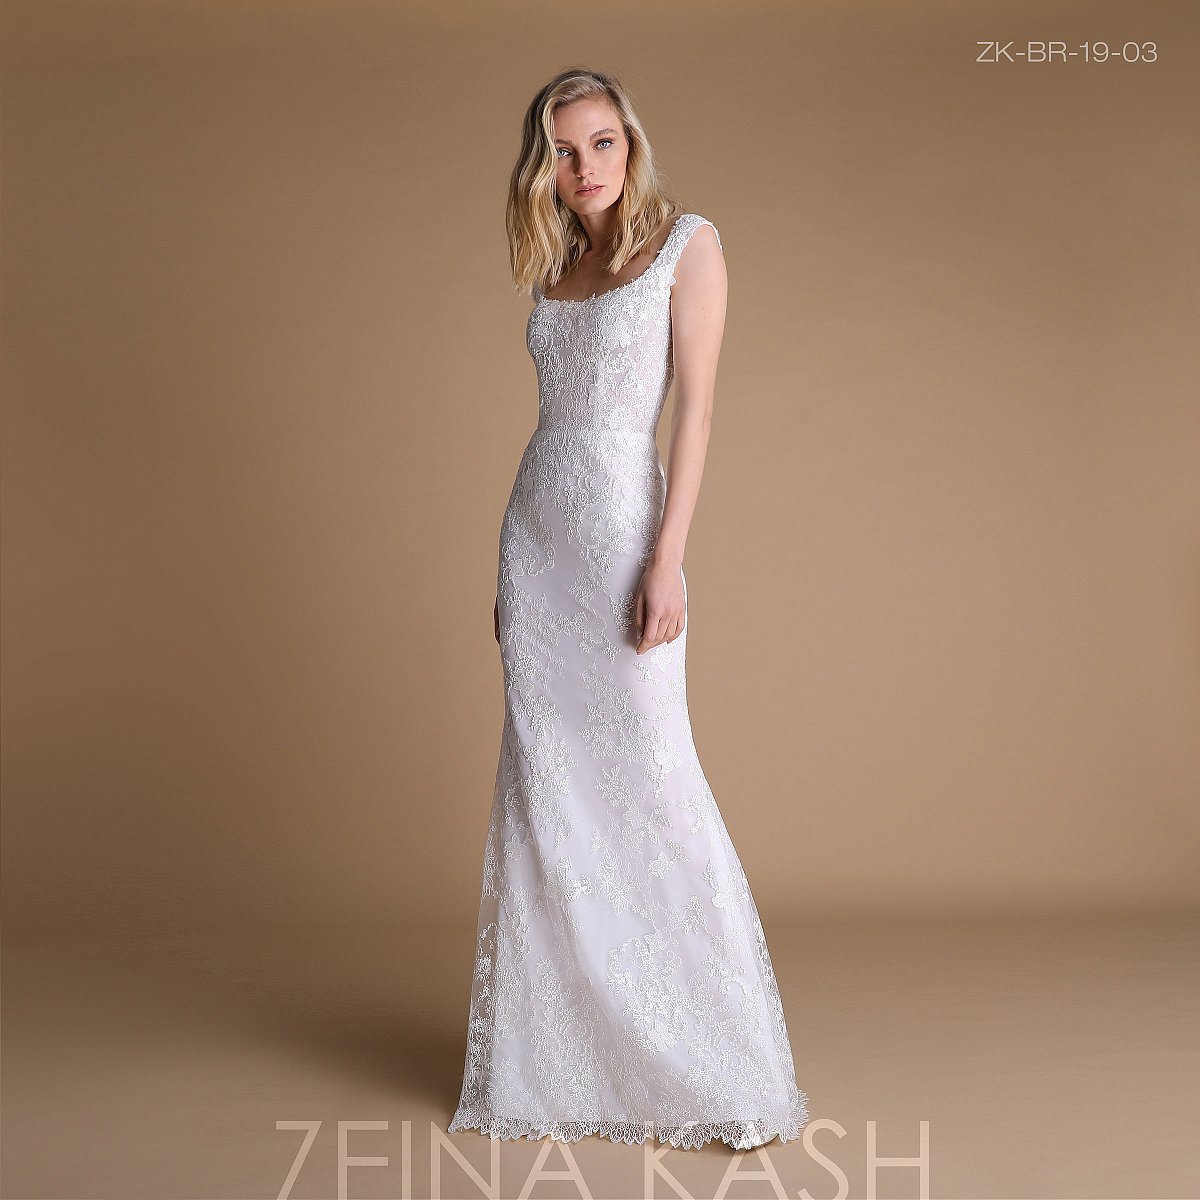 제나 캐시 [Zeina Kash] 2019 컬렉션 - 결혼 - 1